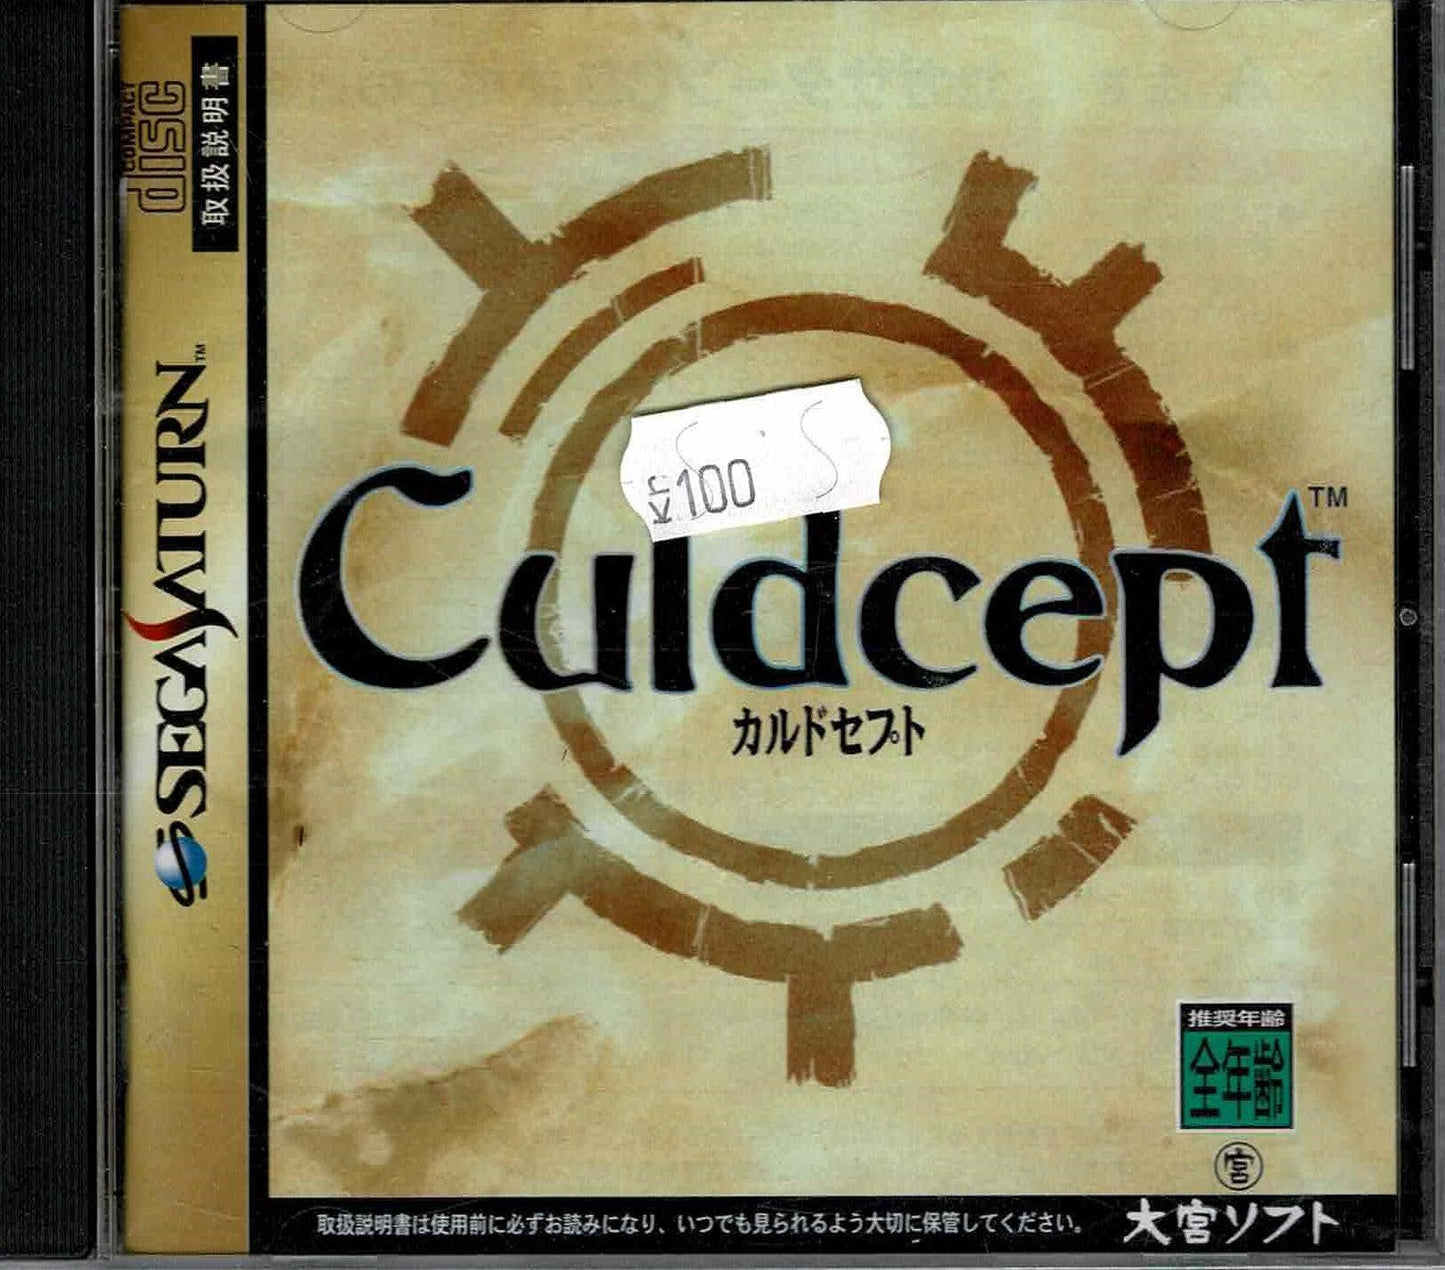 Culdcept (JAP) - ZZGames.dk